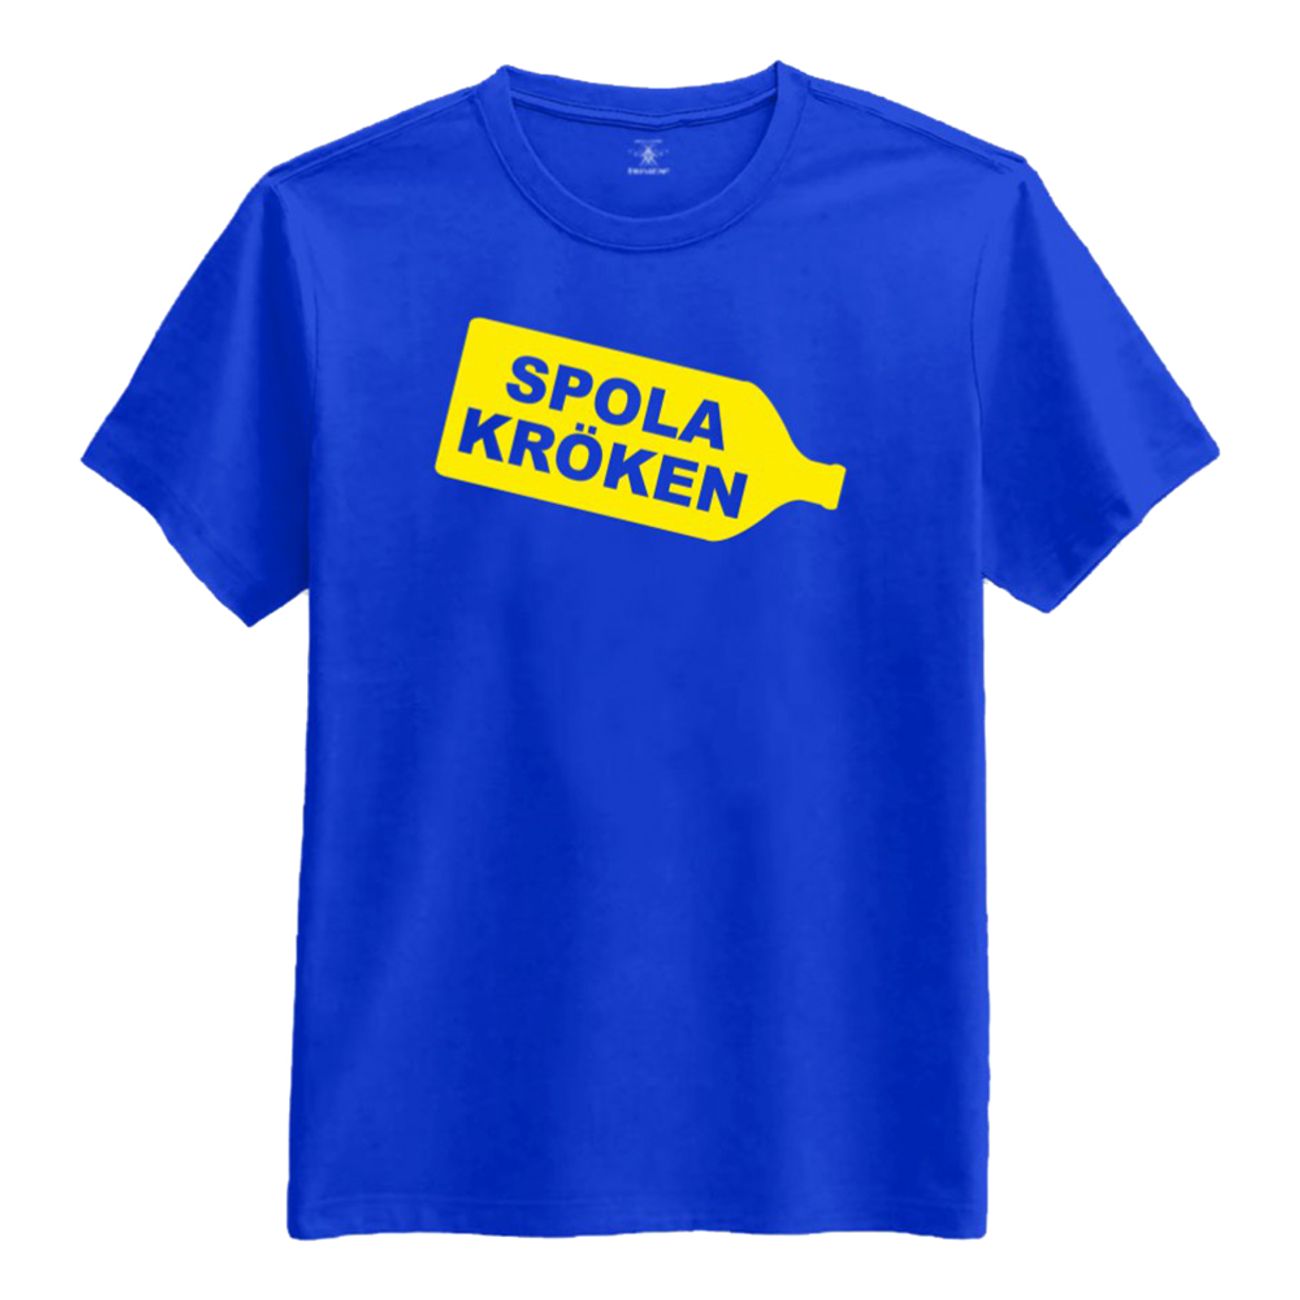 spola-kroken-t-shirt-1